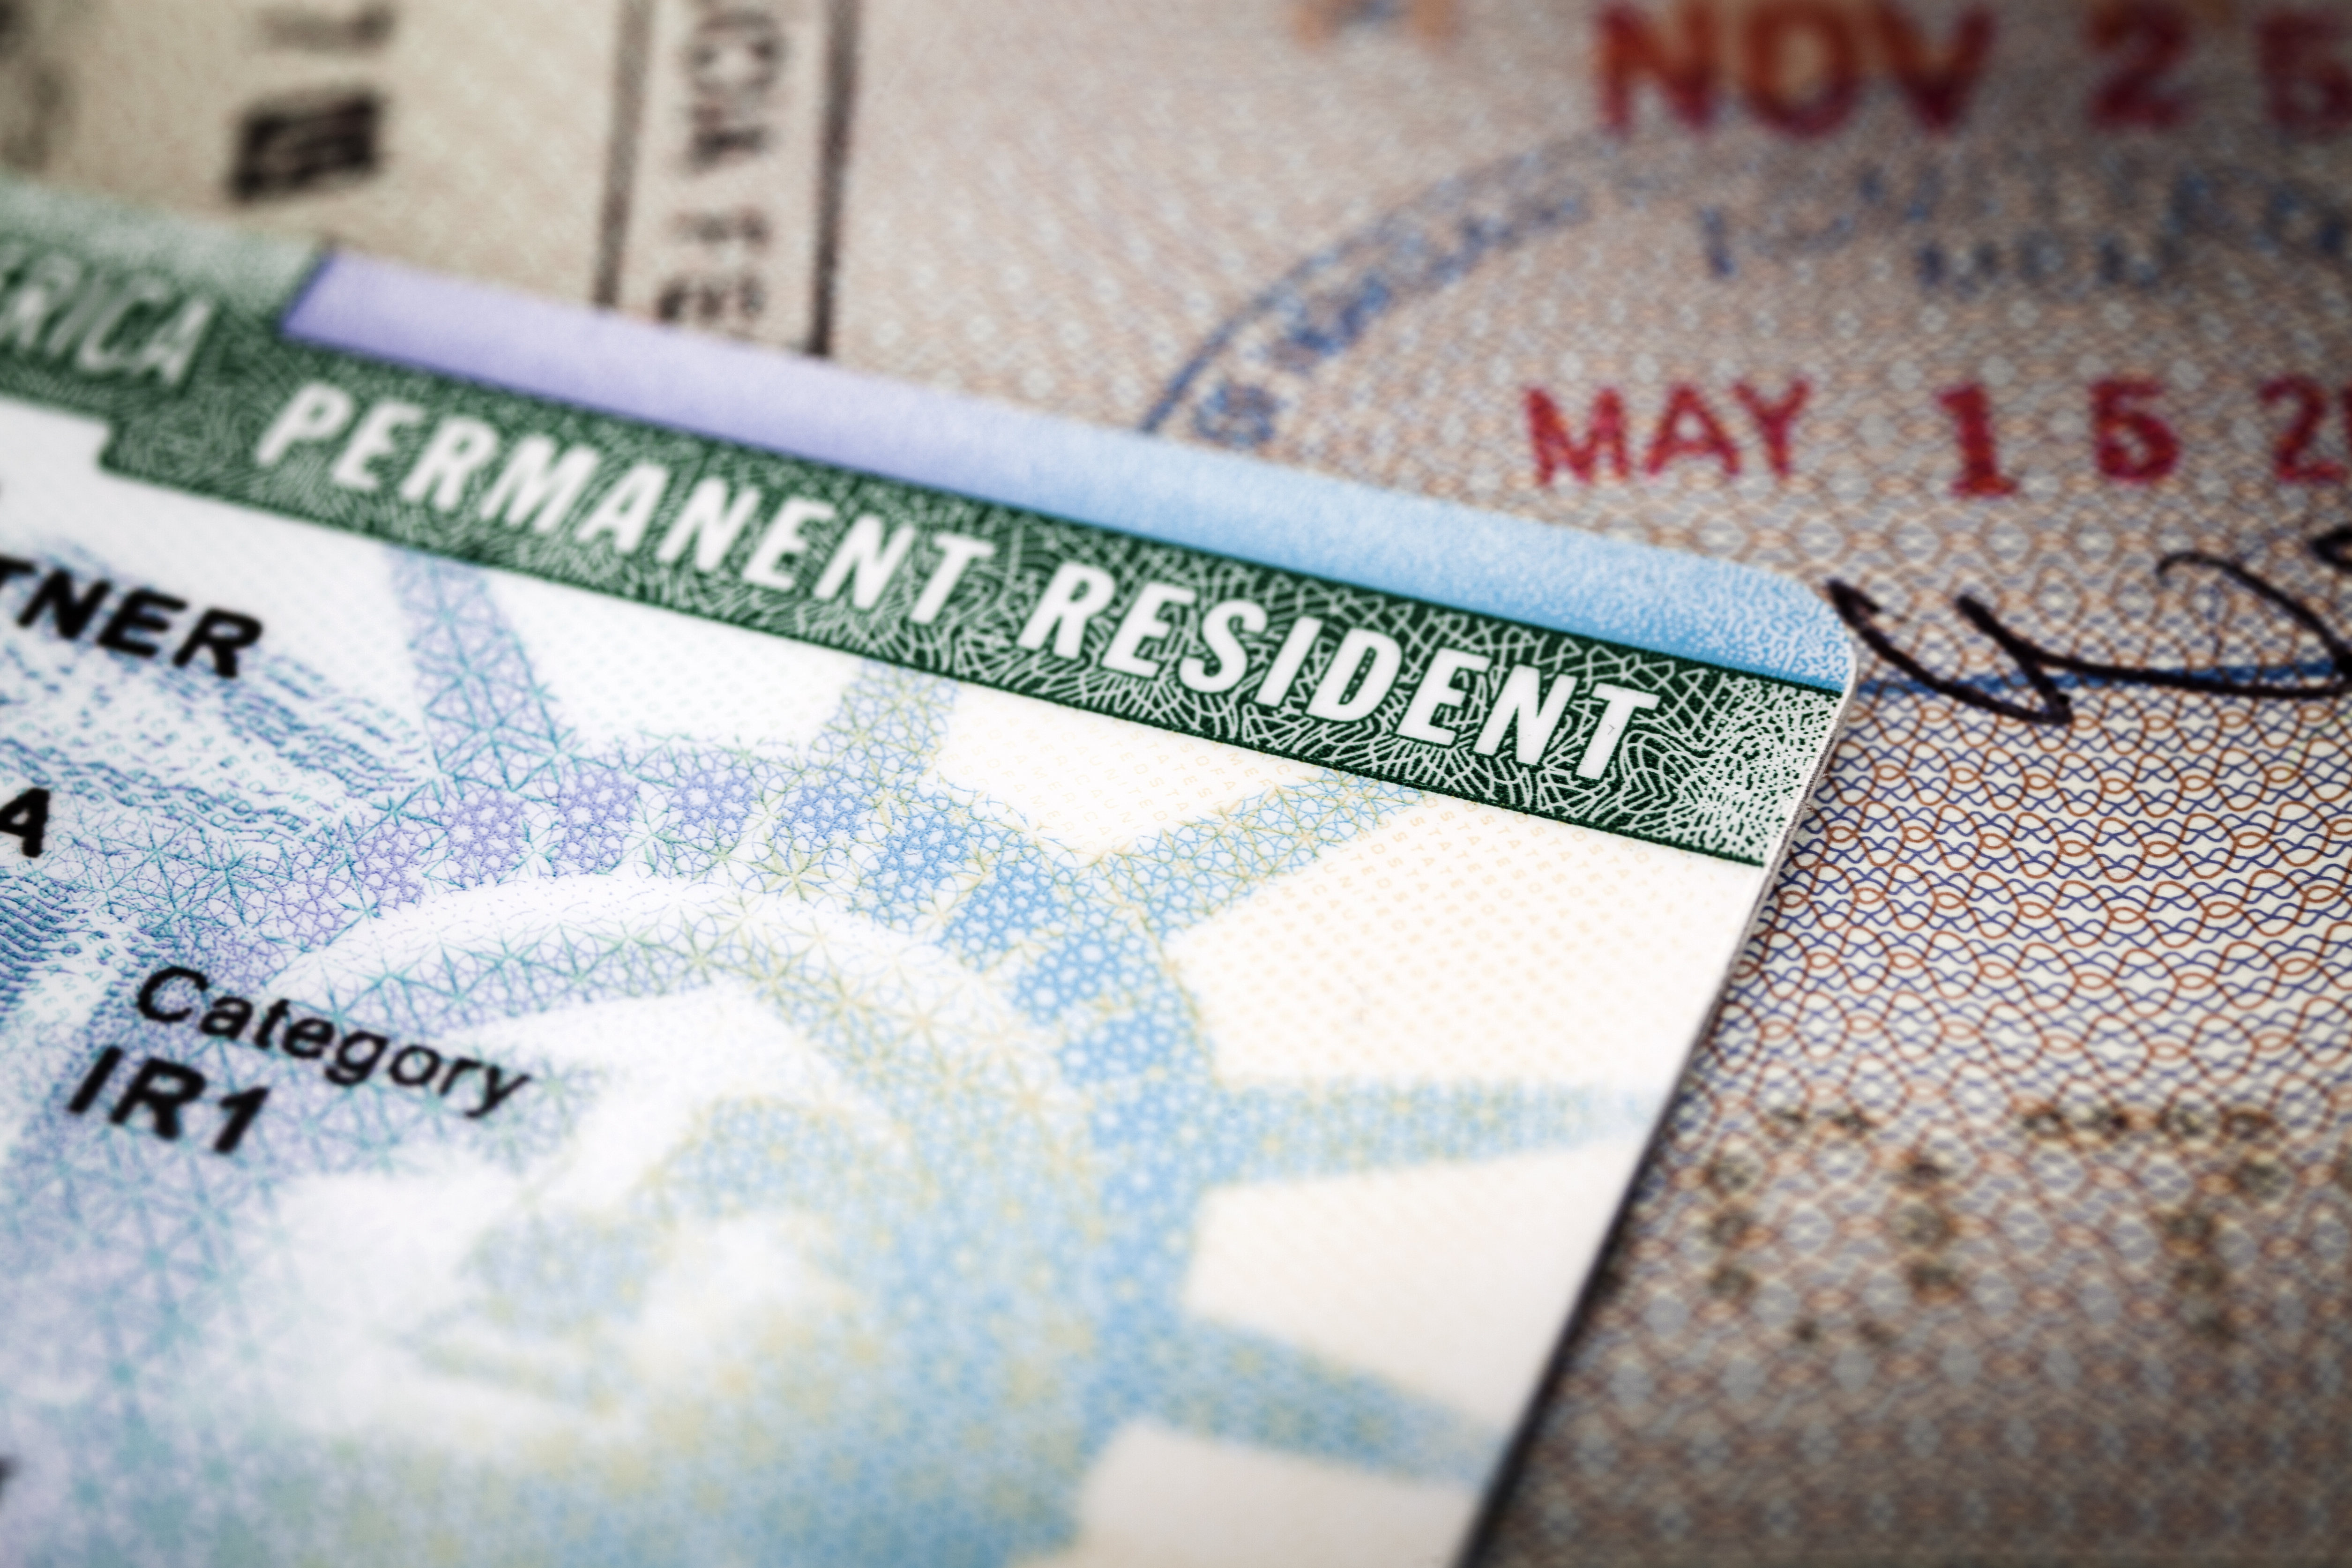 A Green Card lying on an open passport